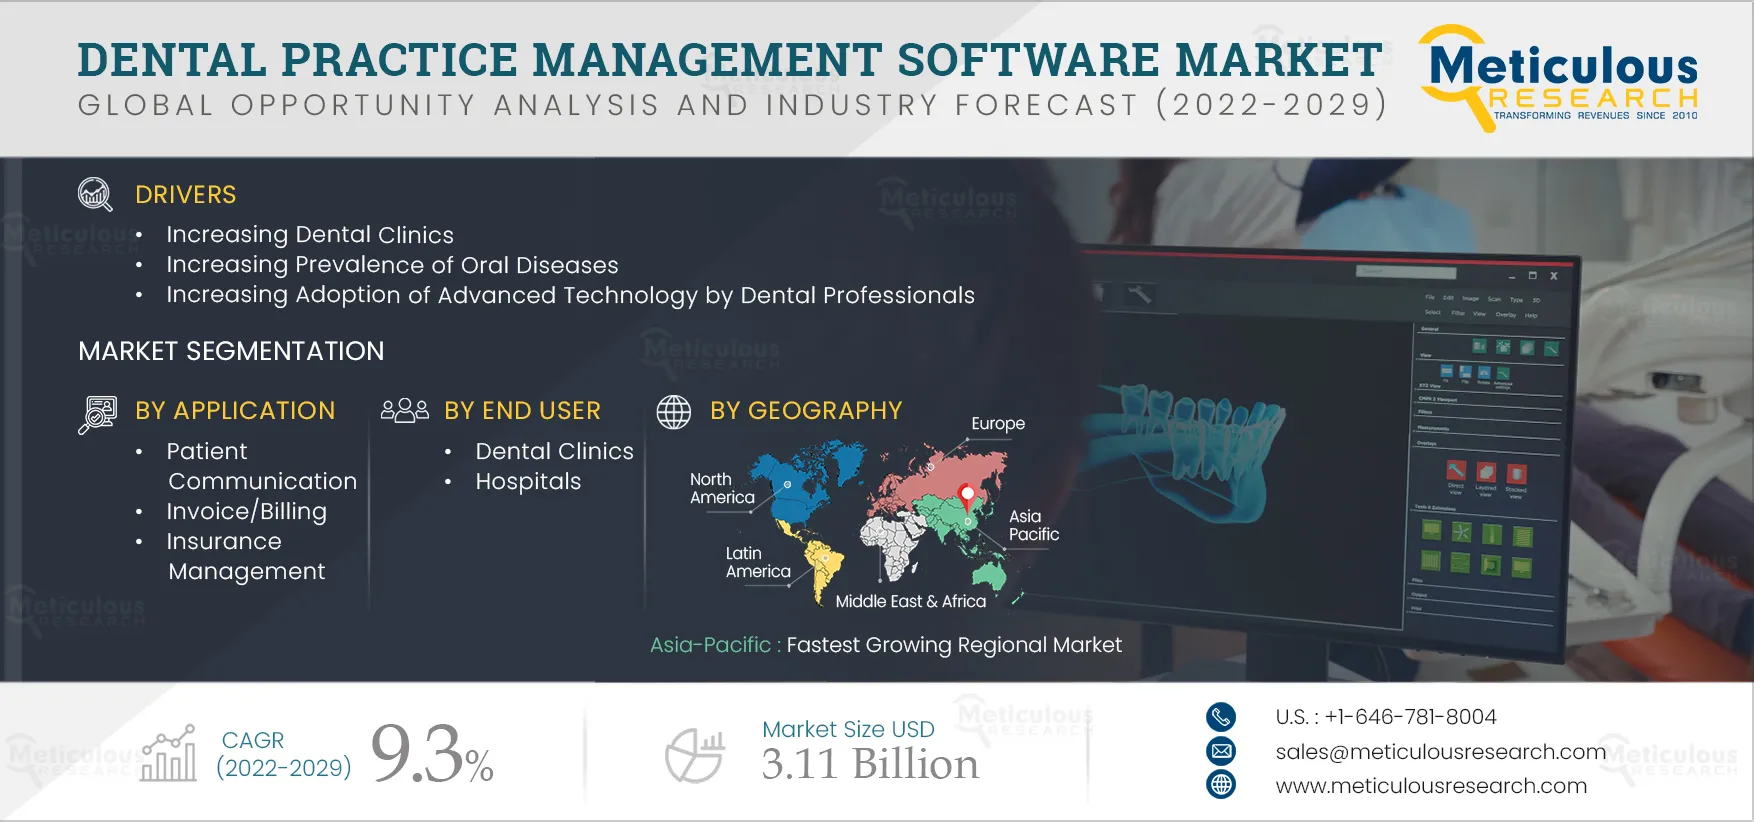 Dental Practice Management Software Market